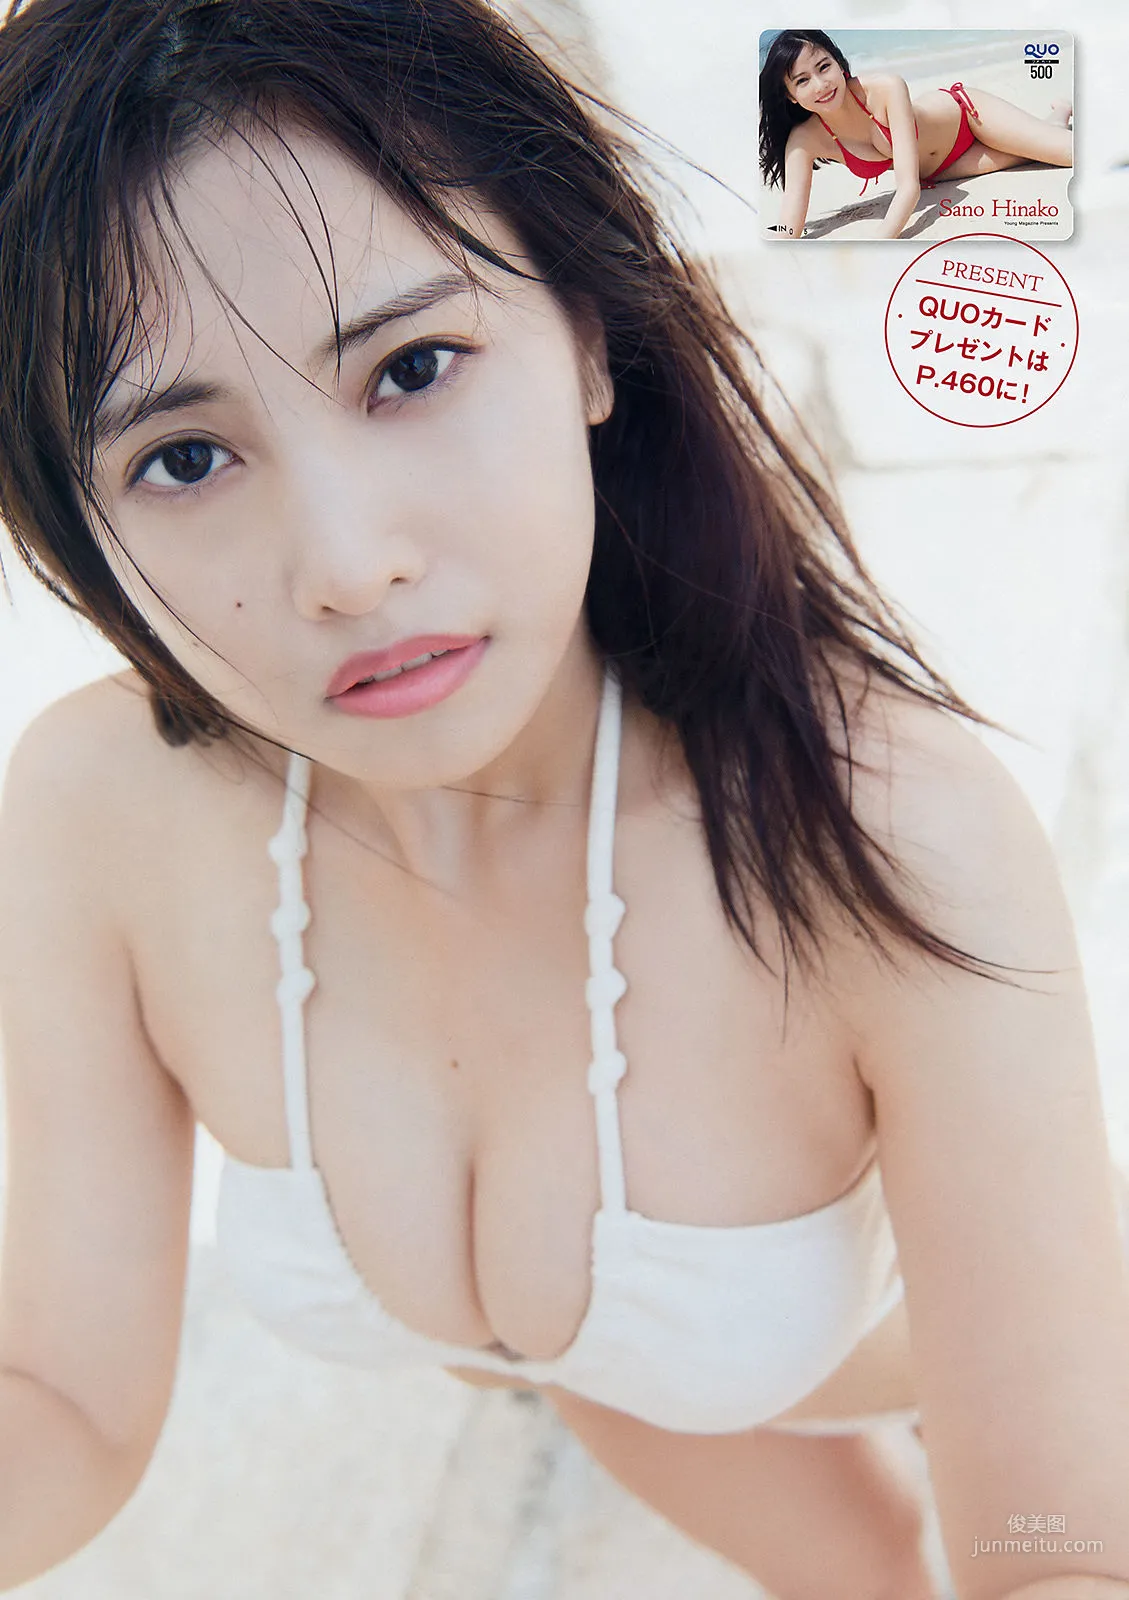 [Young Magazine] 佐野ひなこ Hinako Sano 2018年No.26 写真杂志4